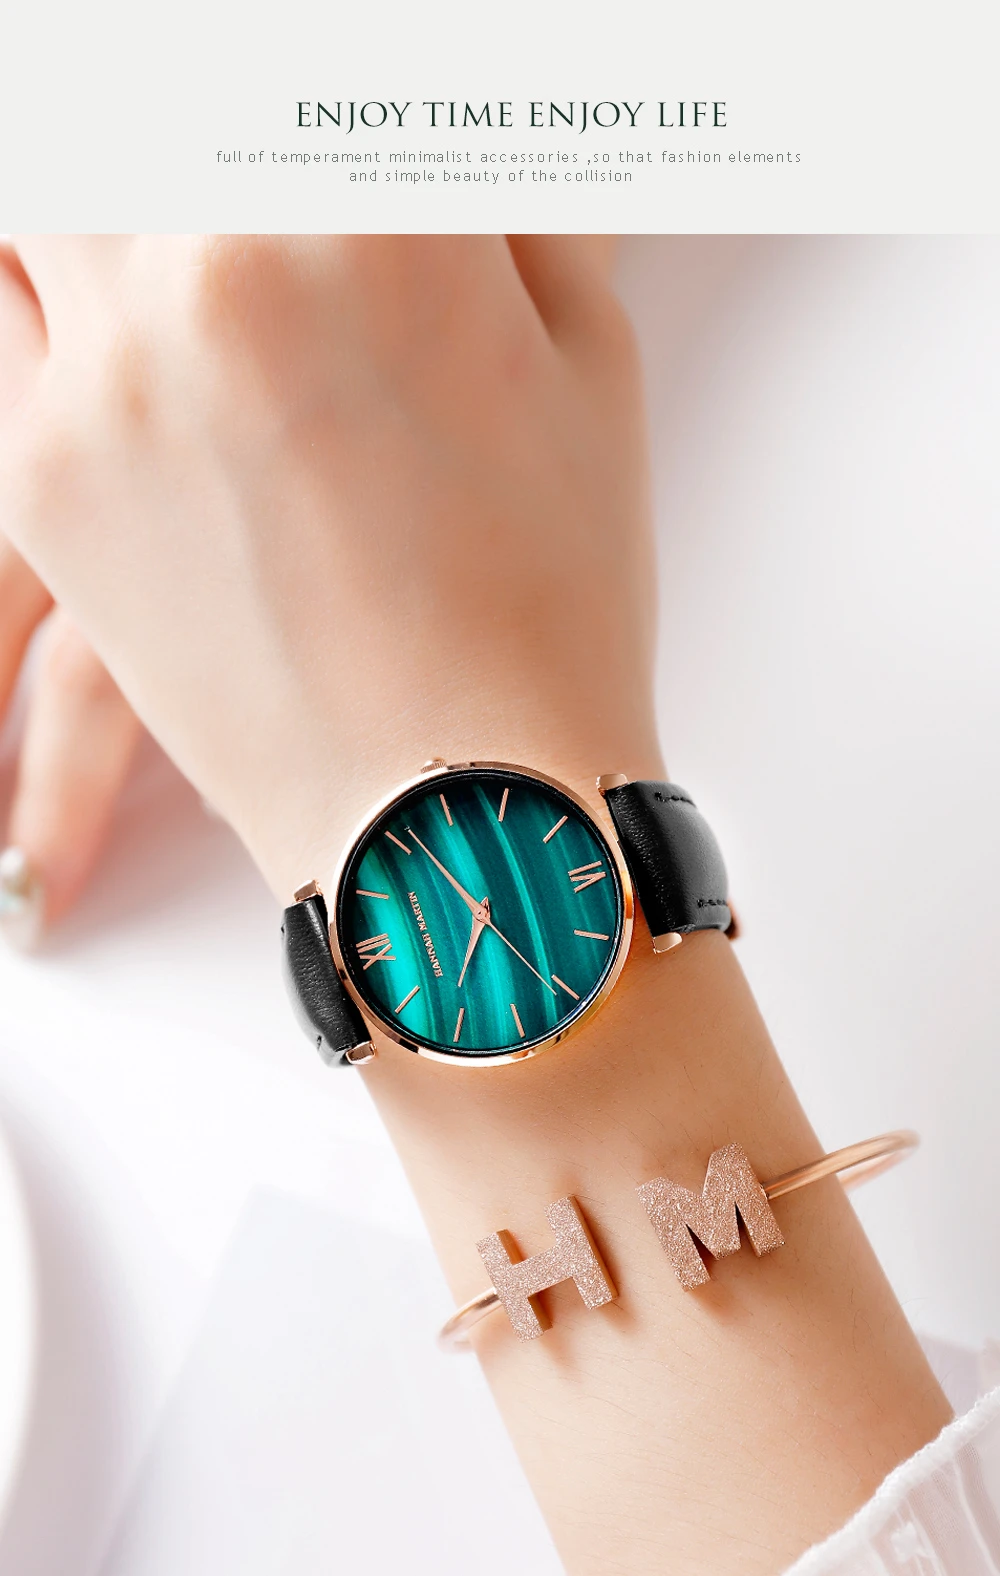 Женские часы с зеленым циферблатом, женские японские кварцевые наручные часы, водонепроницаемые, ультра-тонкие, ремешок из нержавеющей стали, водонепроницаемые, Reloj Mujer